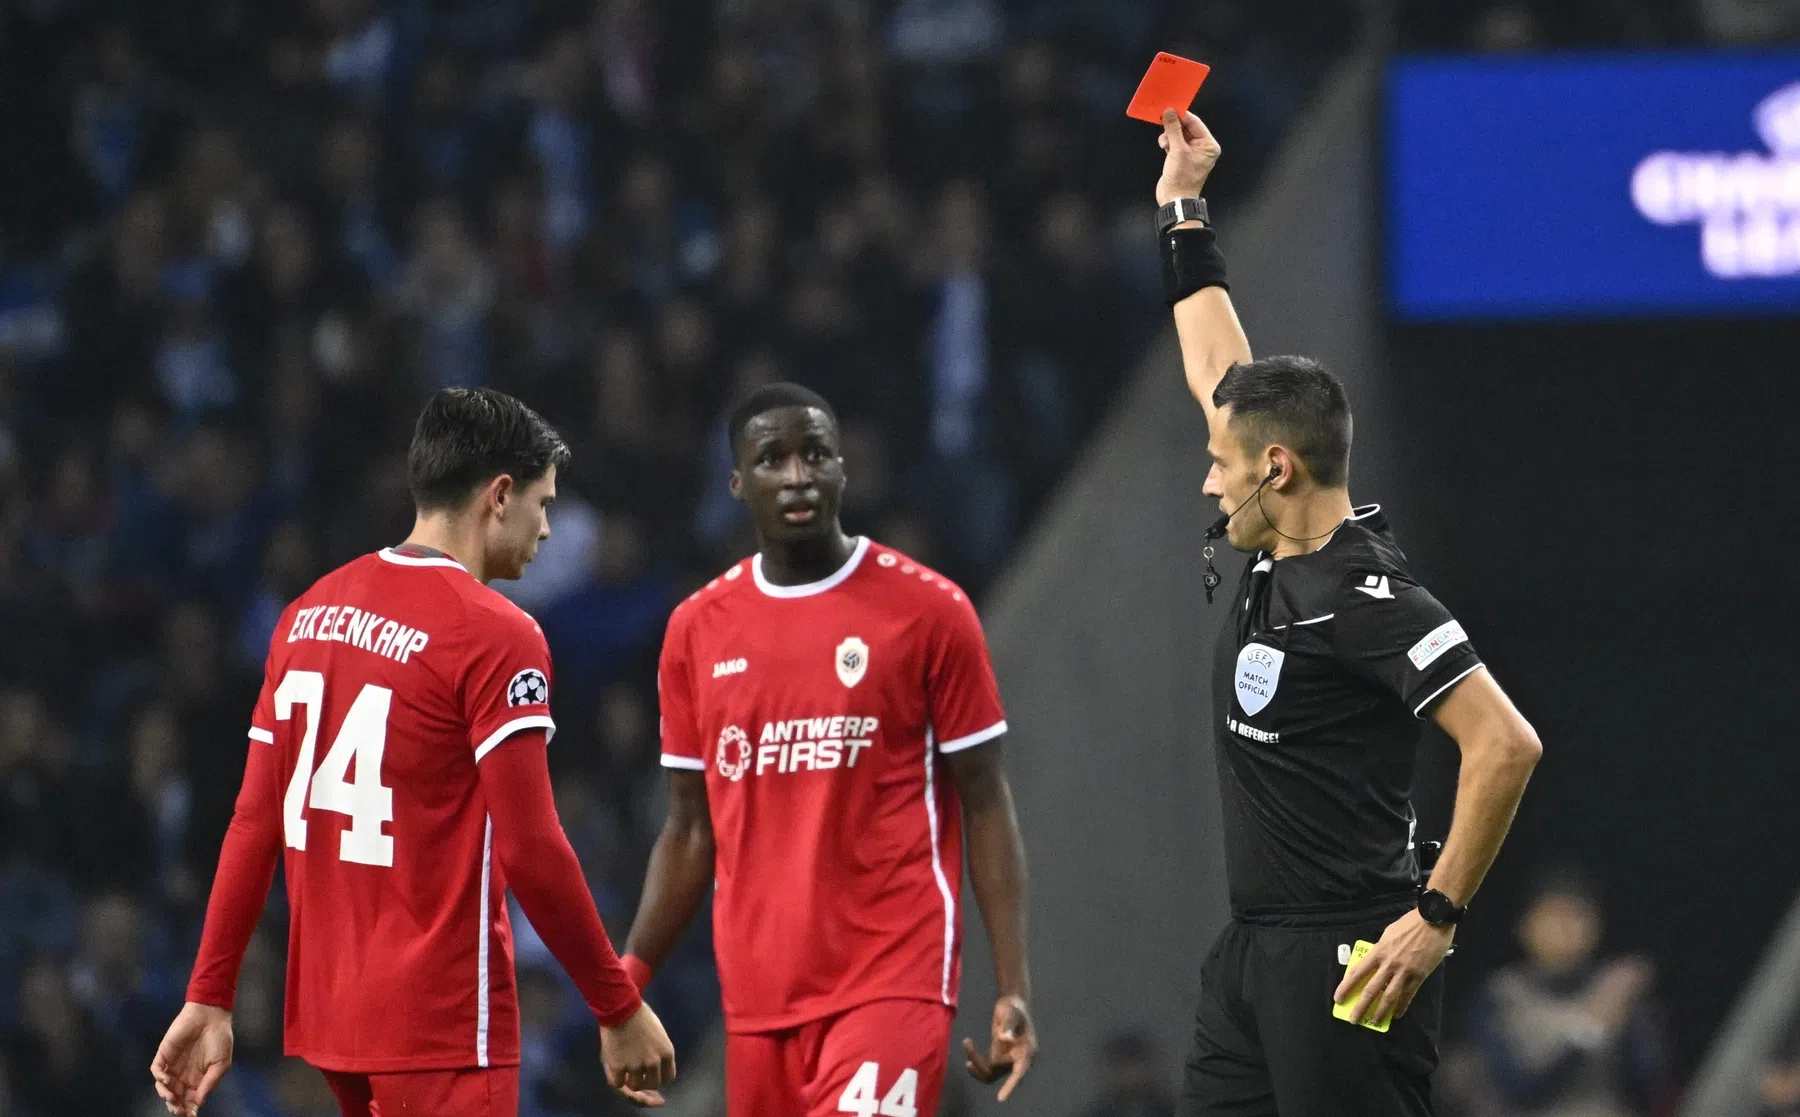 Porto tegen Antwerp bepaalt door rode kaart Ekkelenkamp volgens Portugese media